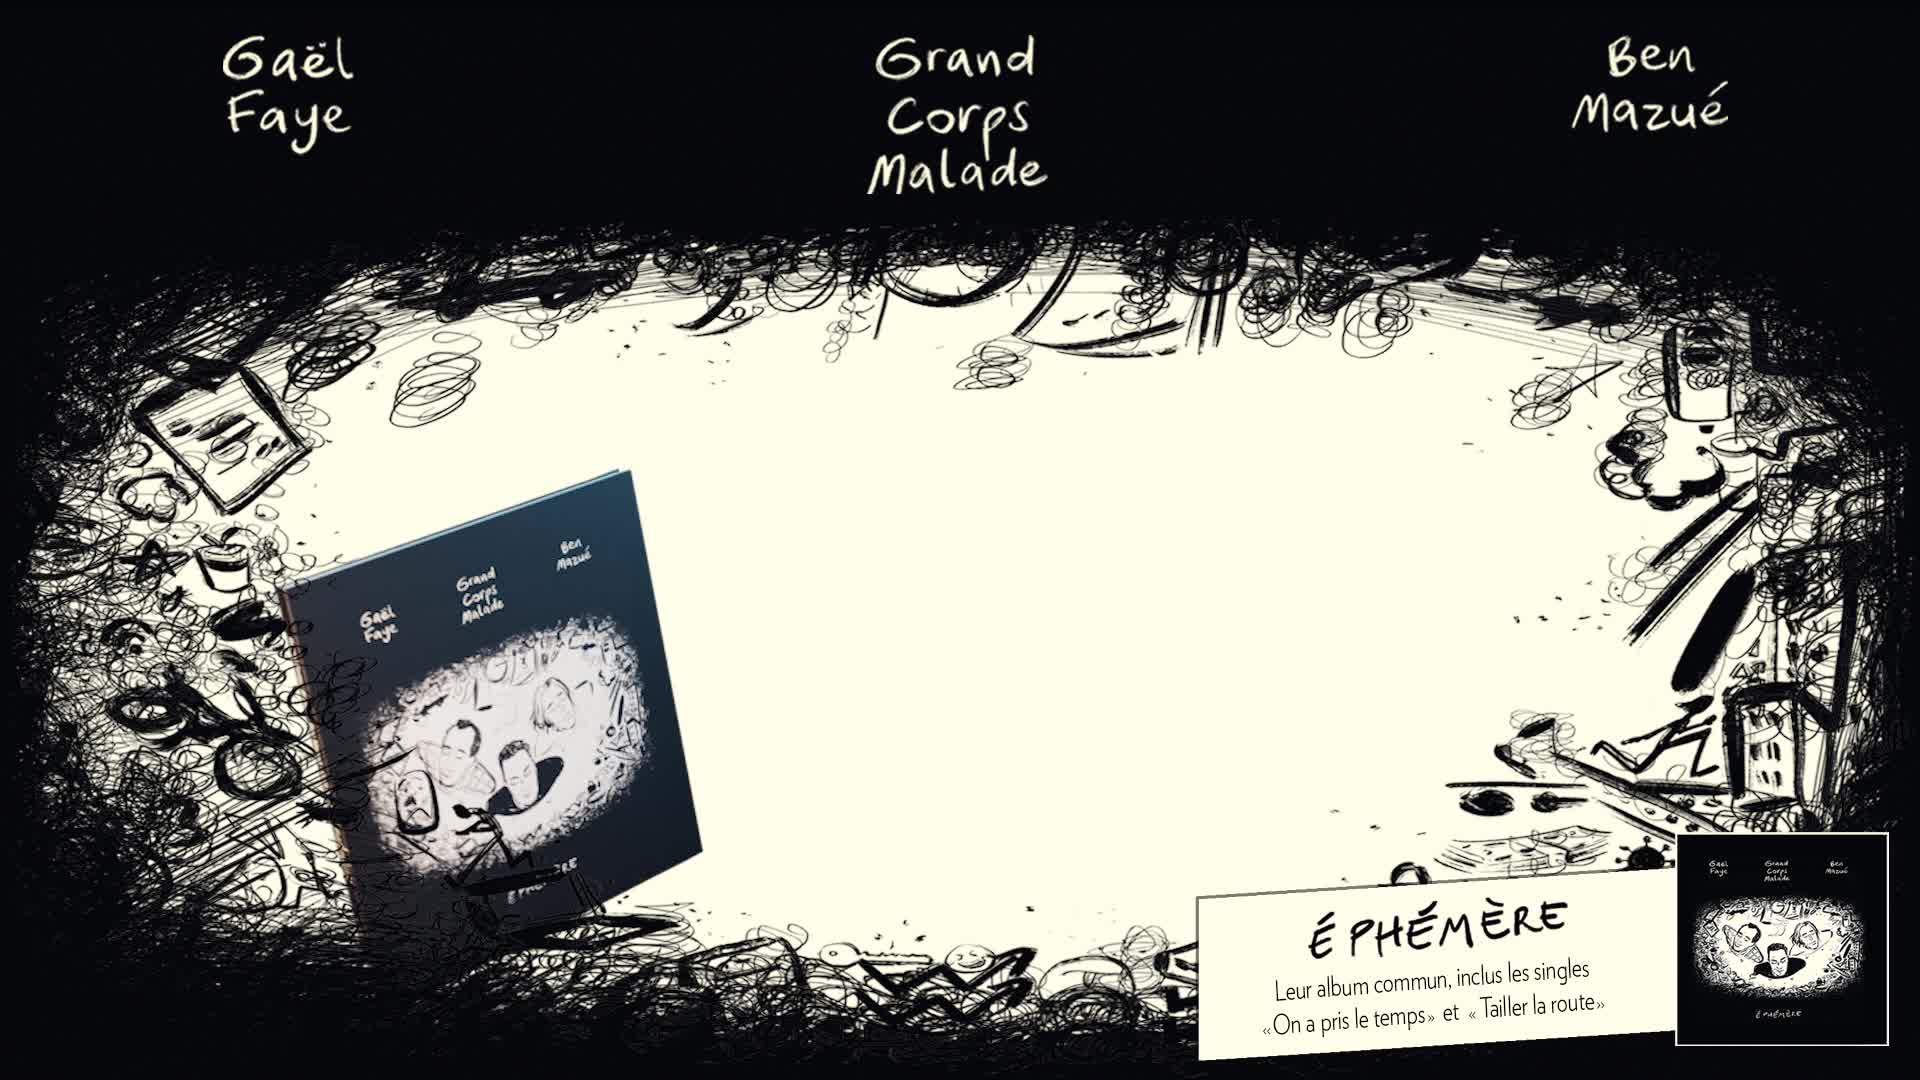 Éphémère : Le mini-album de Grand Corps Malade, Ben Mazué et Gaël Faye est  disponible !